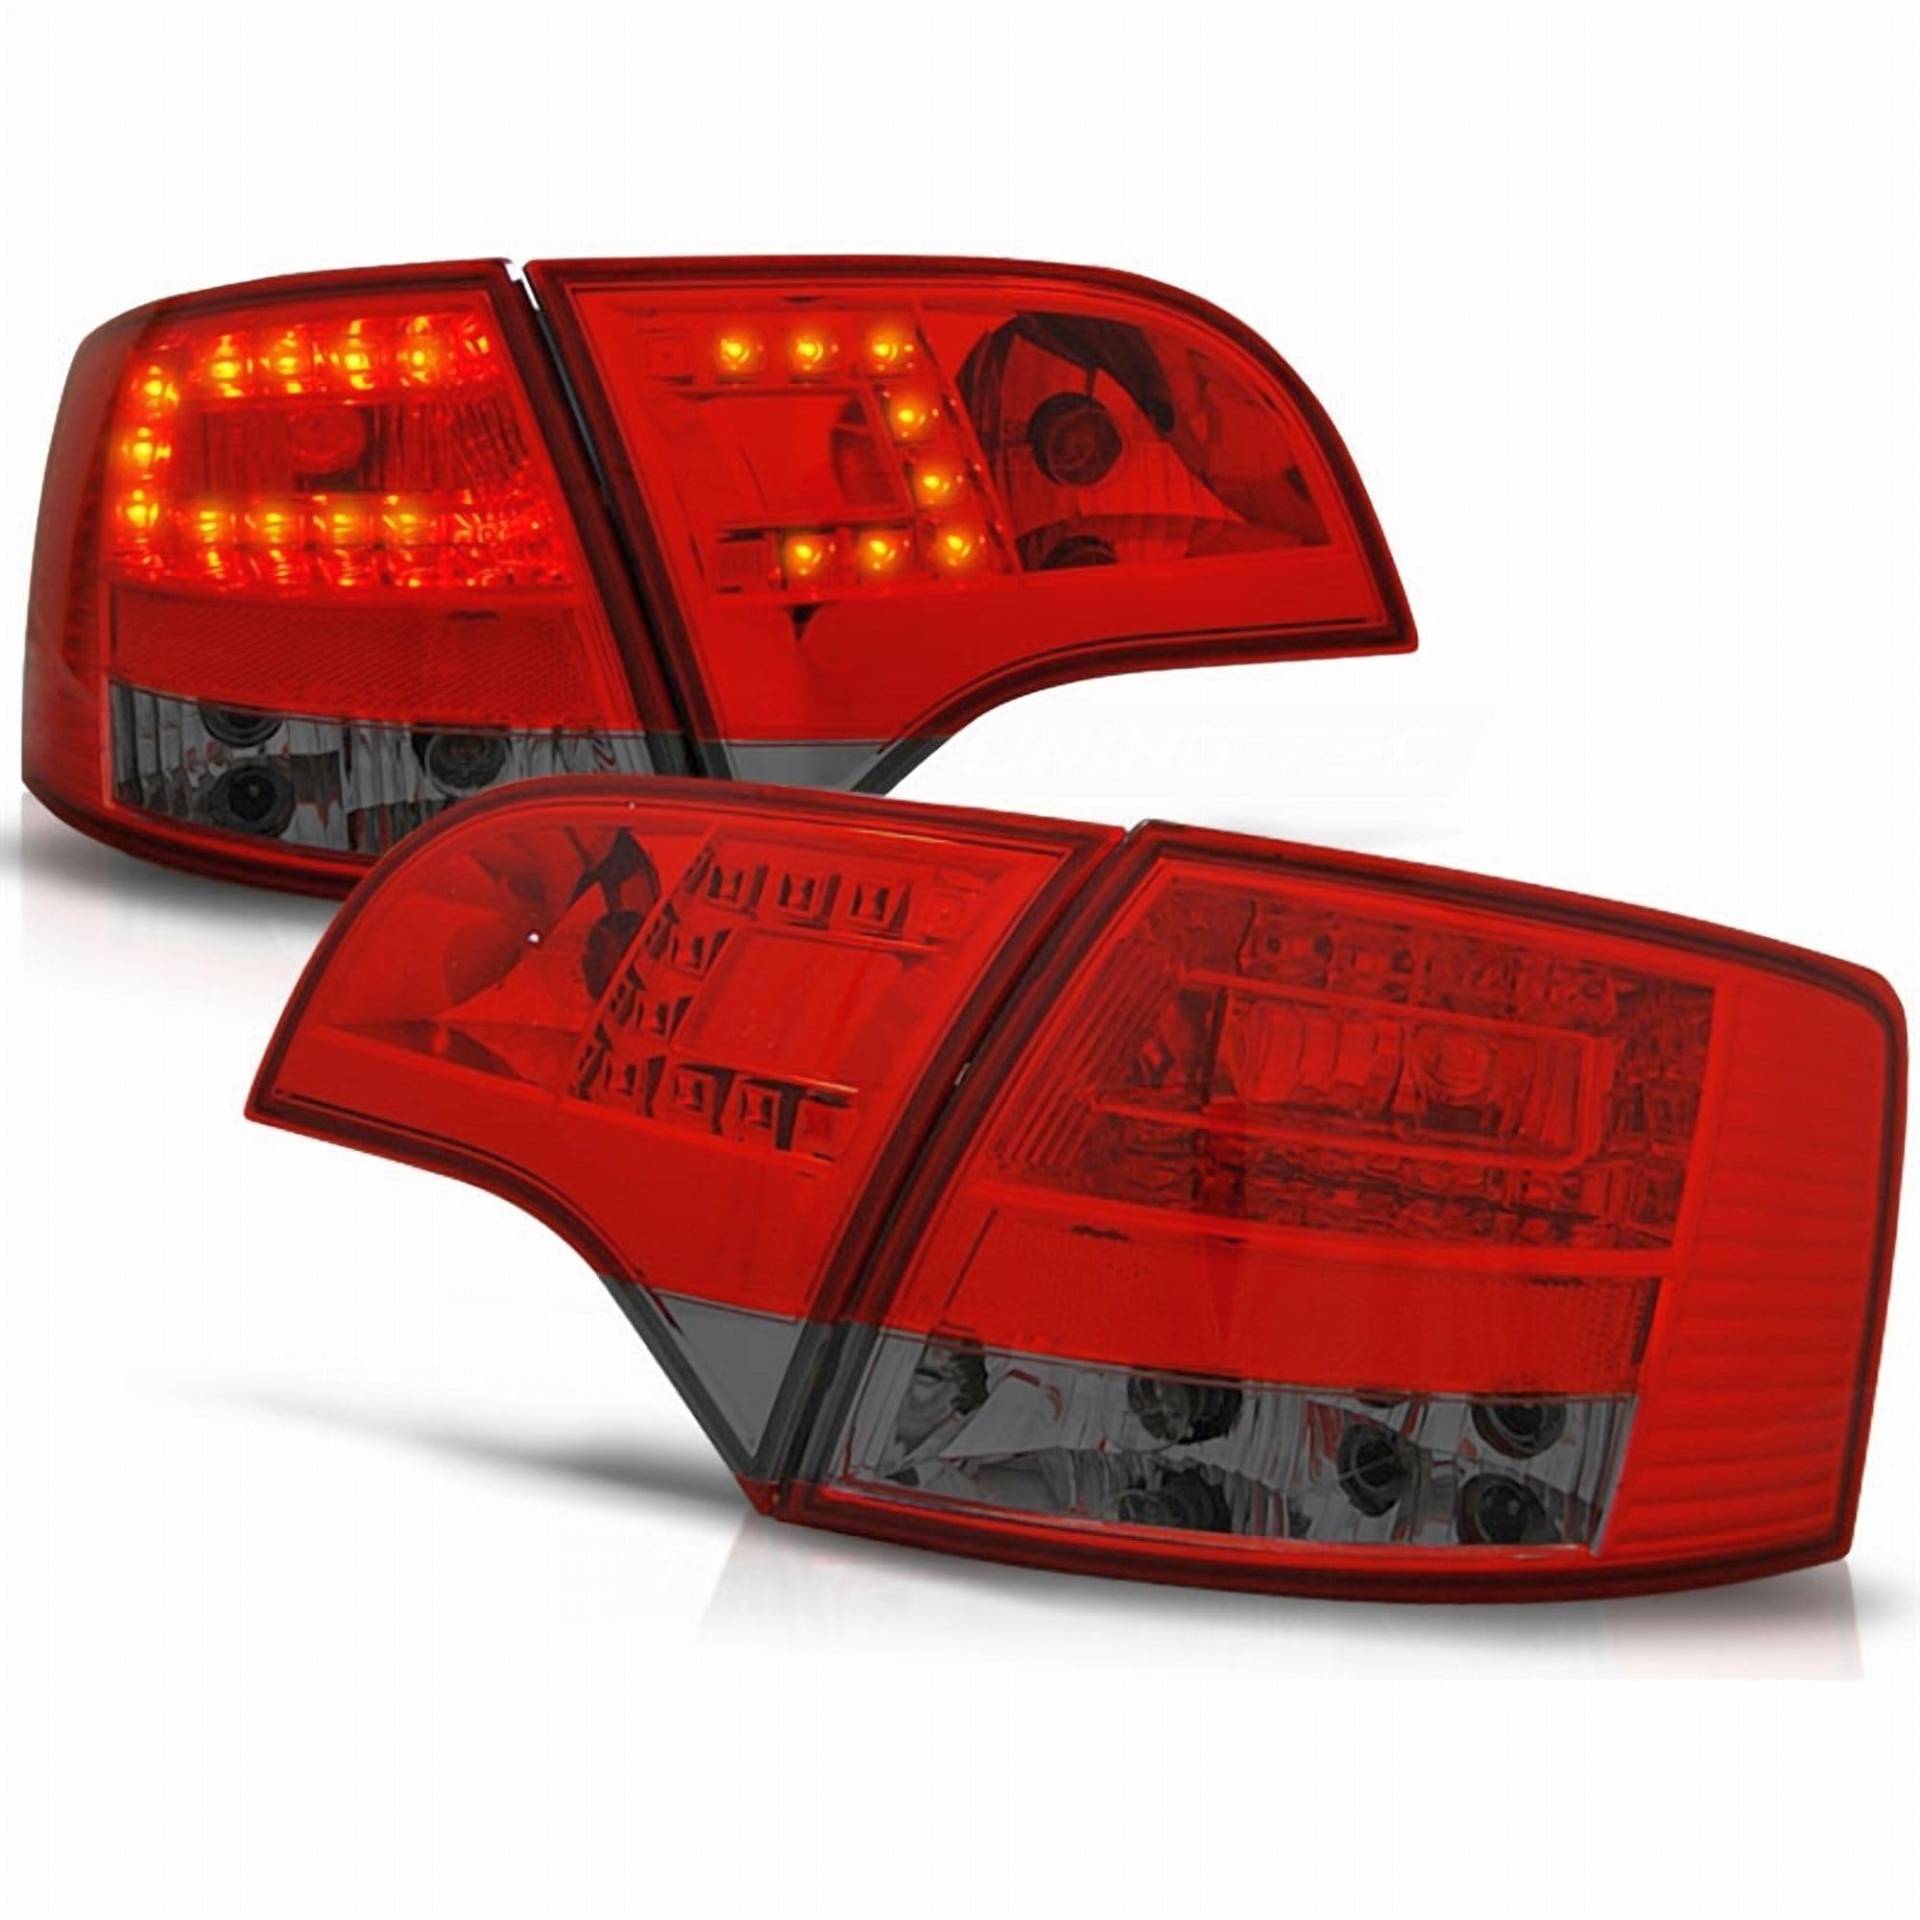 LED Rückleuchten Set rot matt für Audi A4 B7 11.04-03.08 Avant von CR-Lights